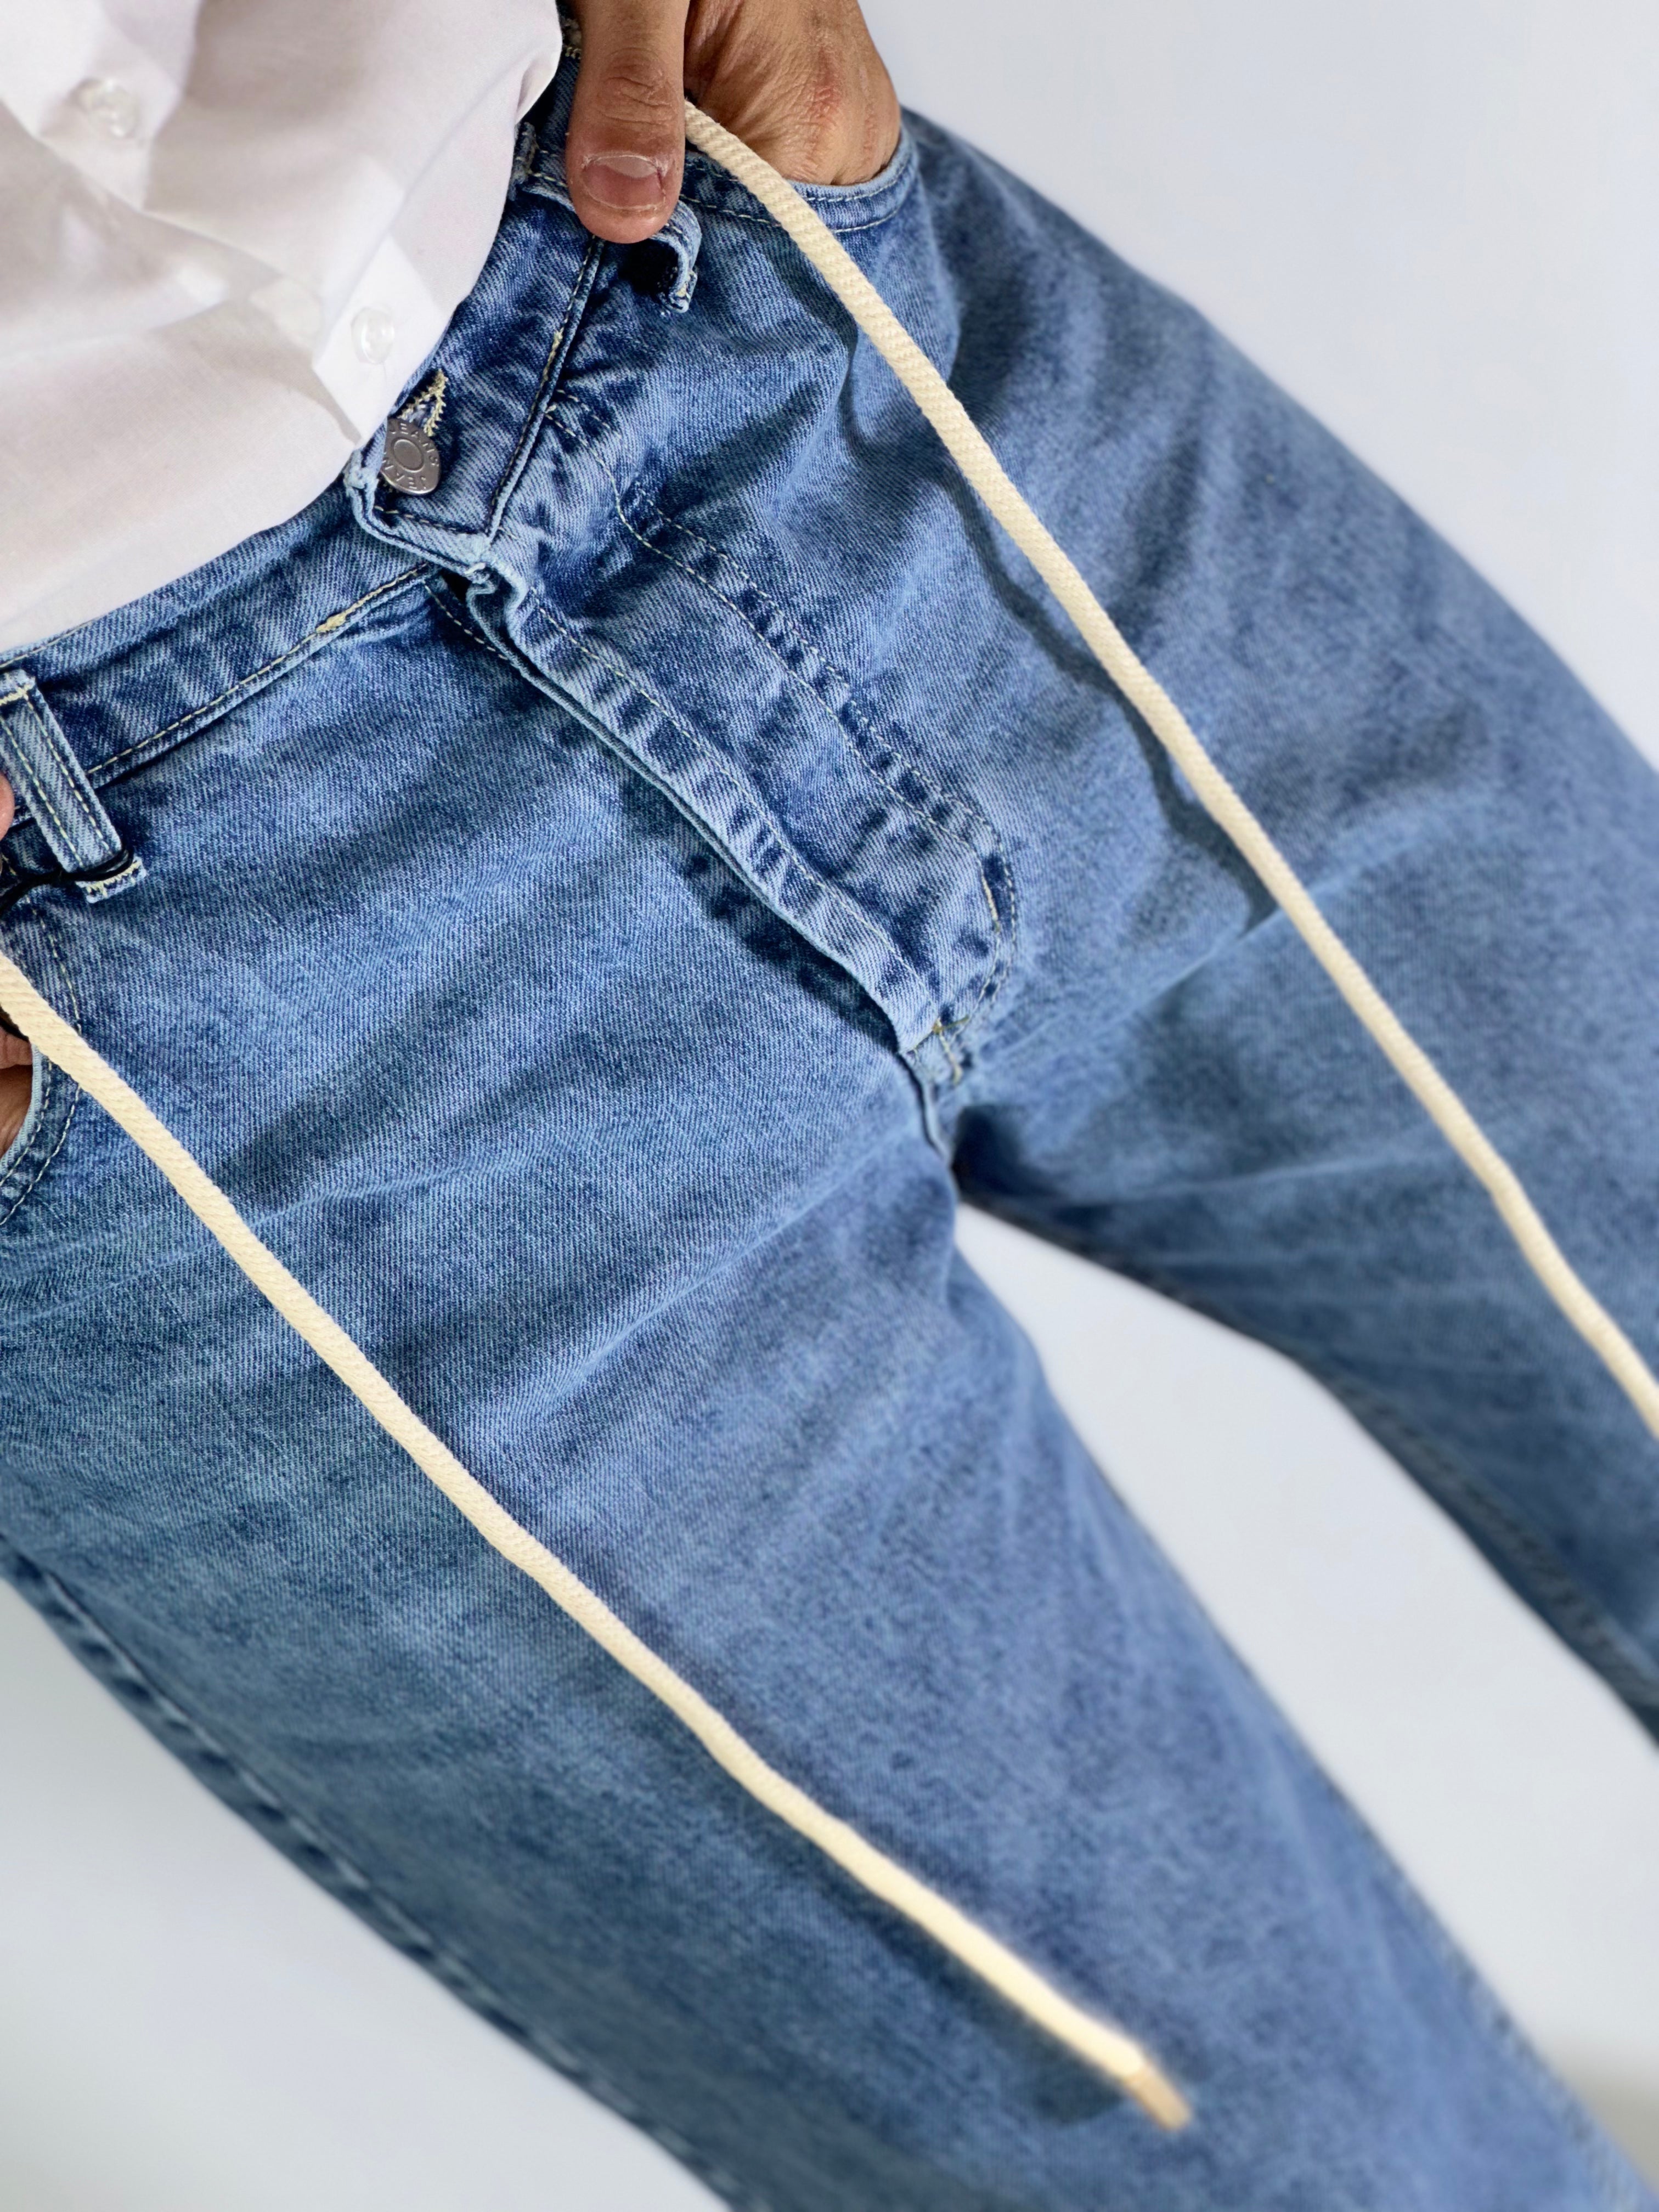 Jeans loose fit CARROT marmorizzato chiaro BLKS/2030